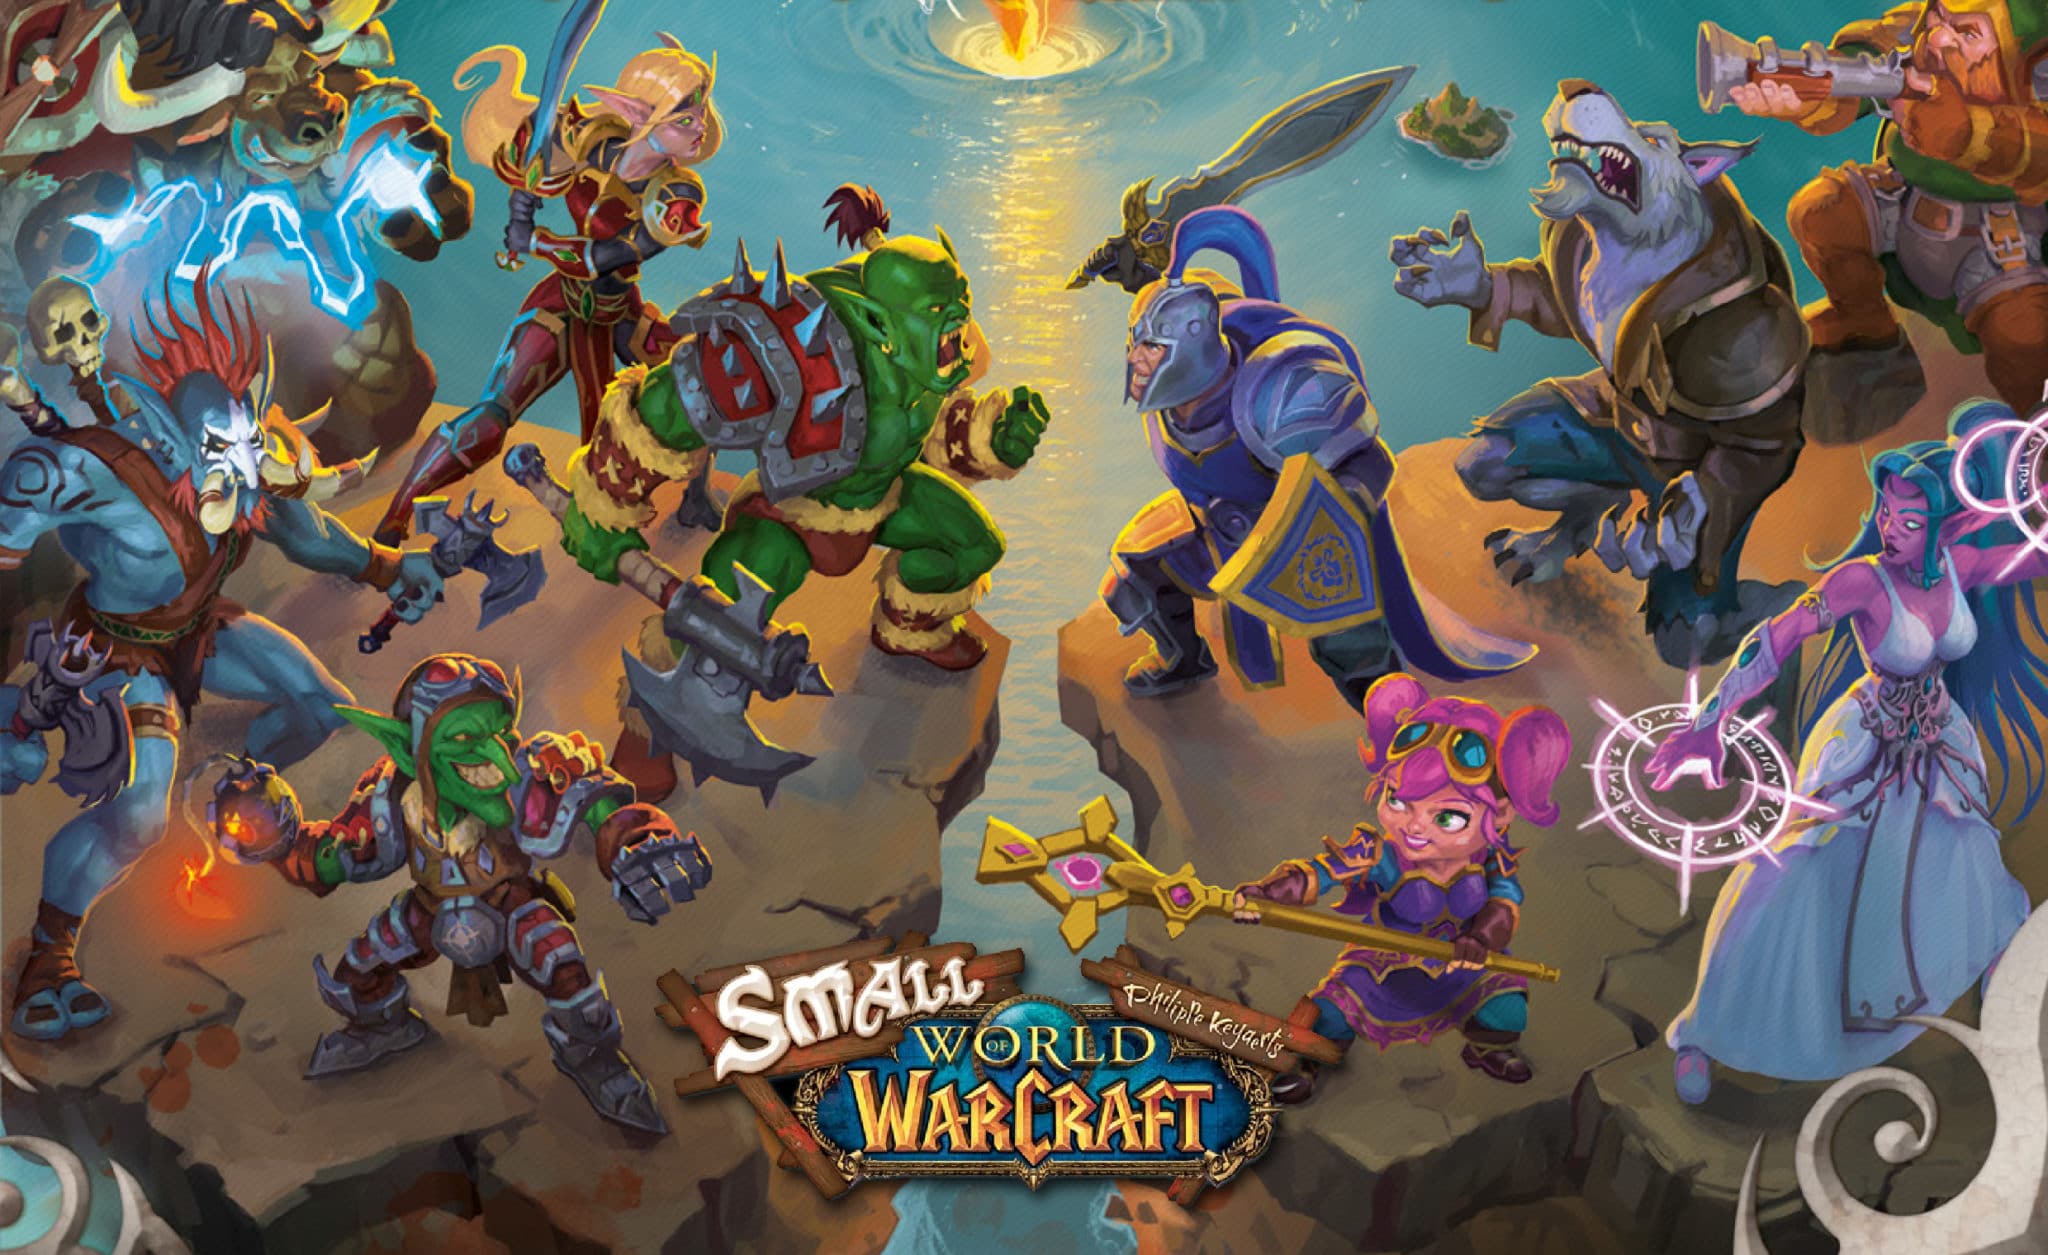 Smal World of Warcraft box art